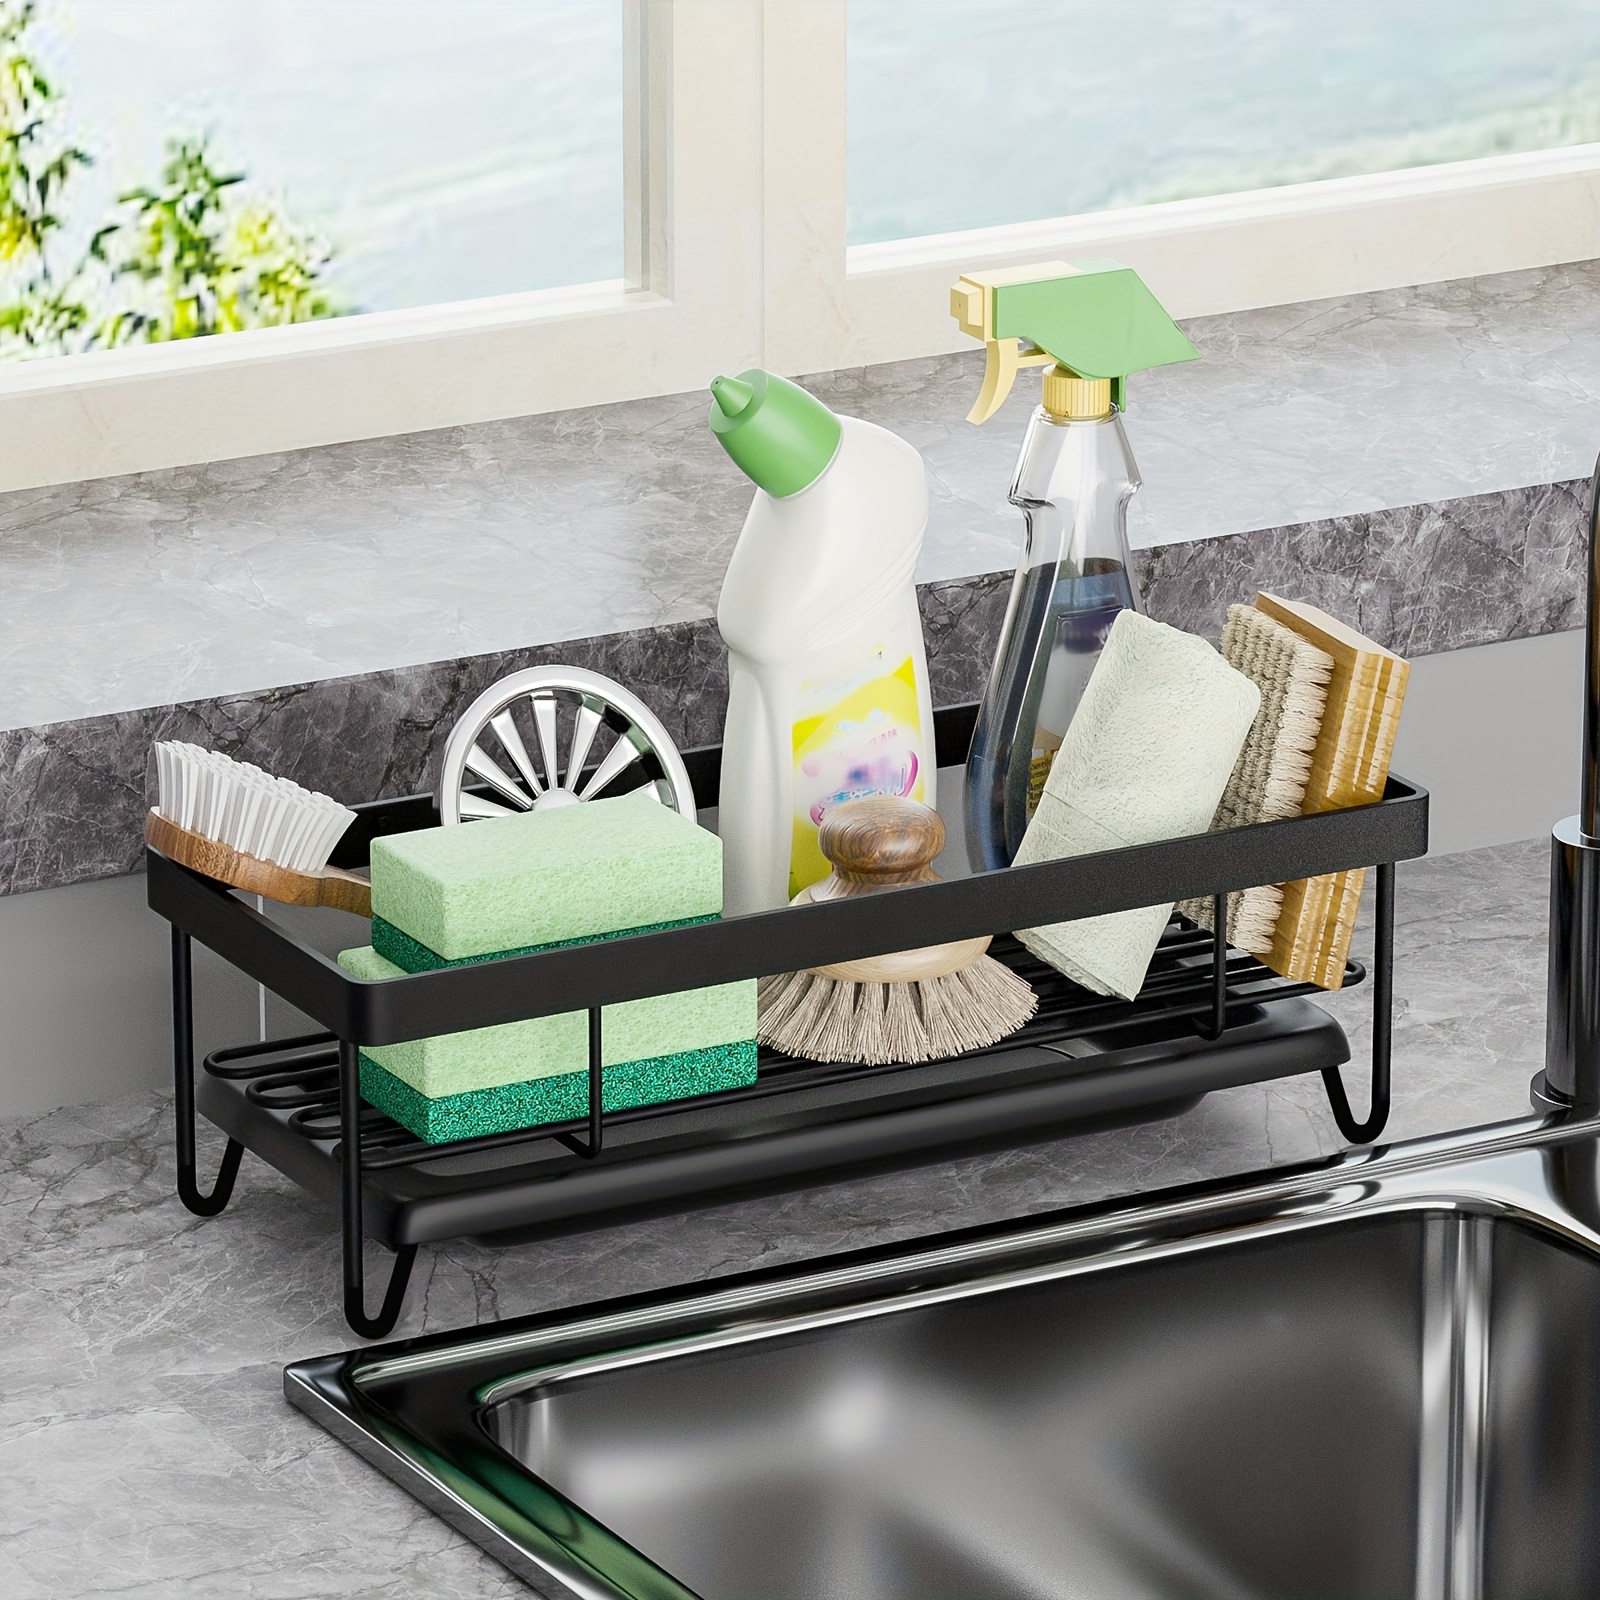 Maximize Kitchen Storage Space Adjustable Sink Organizer - Temu